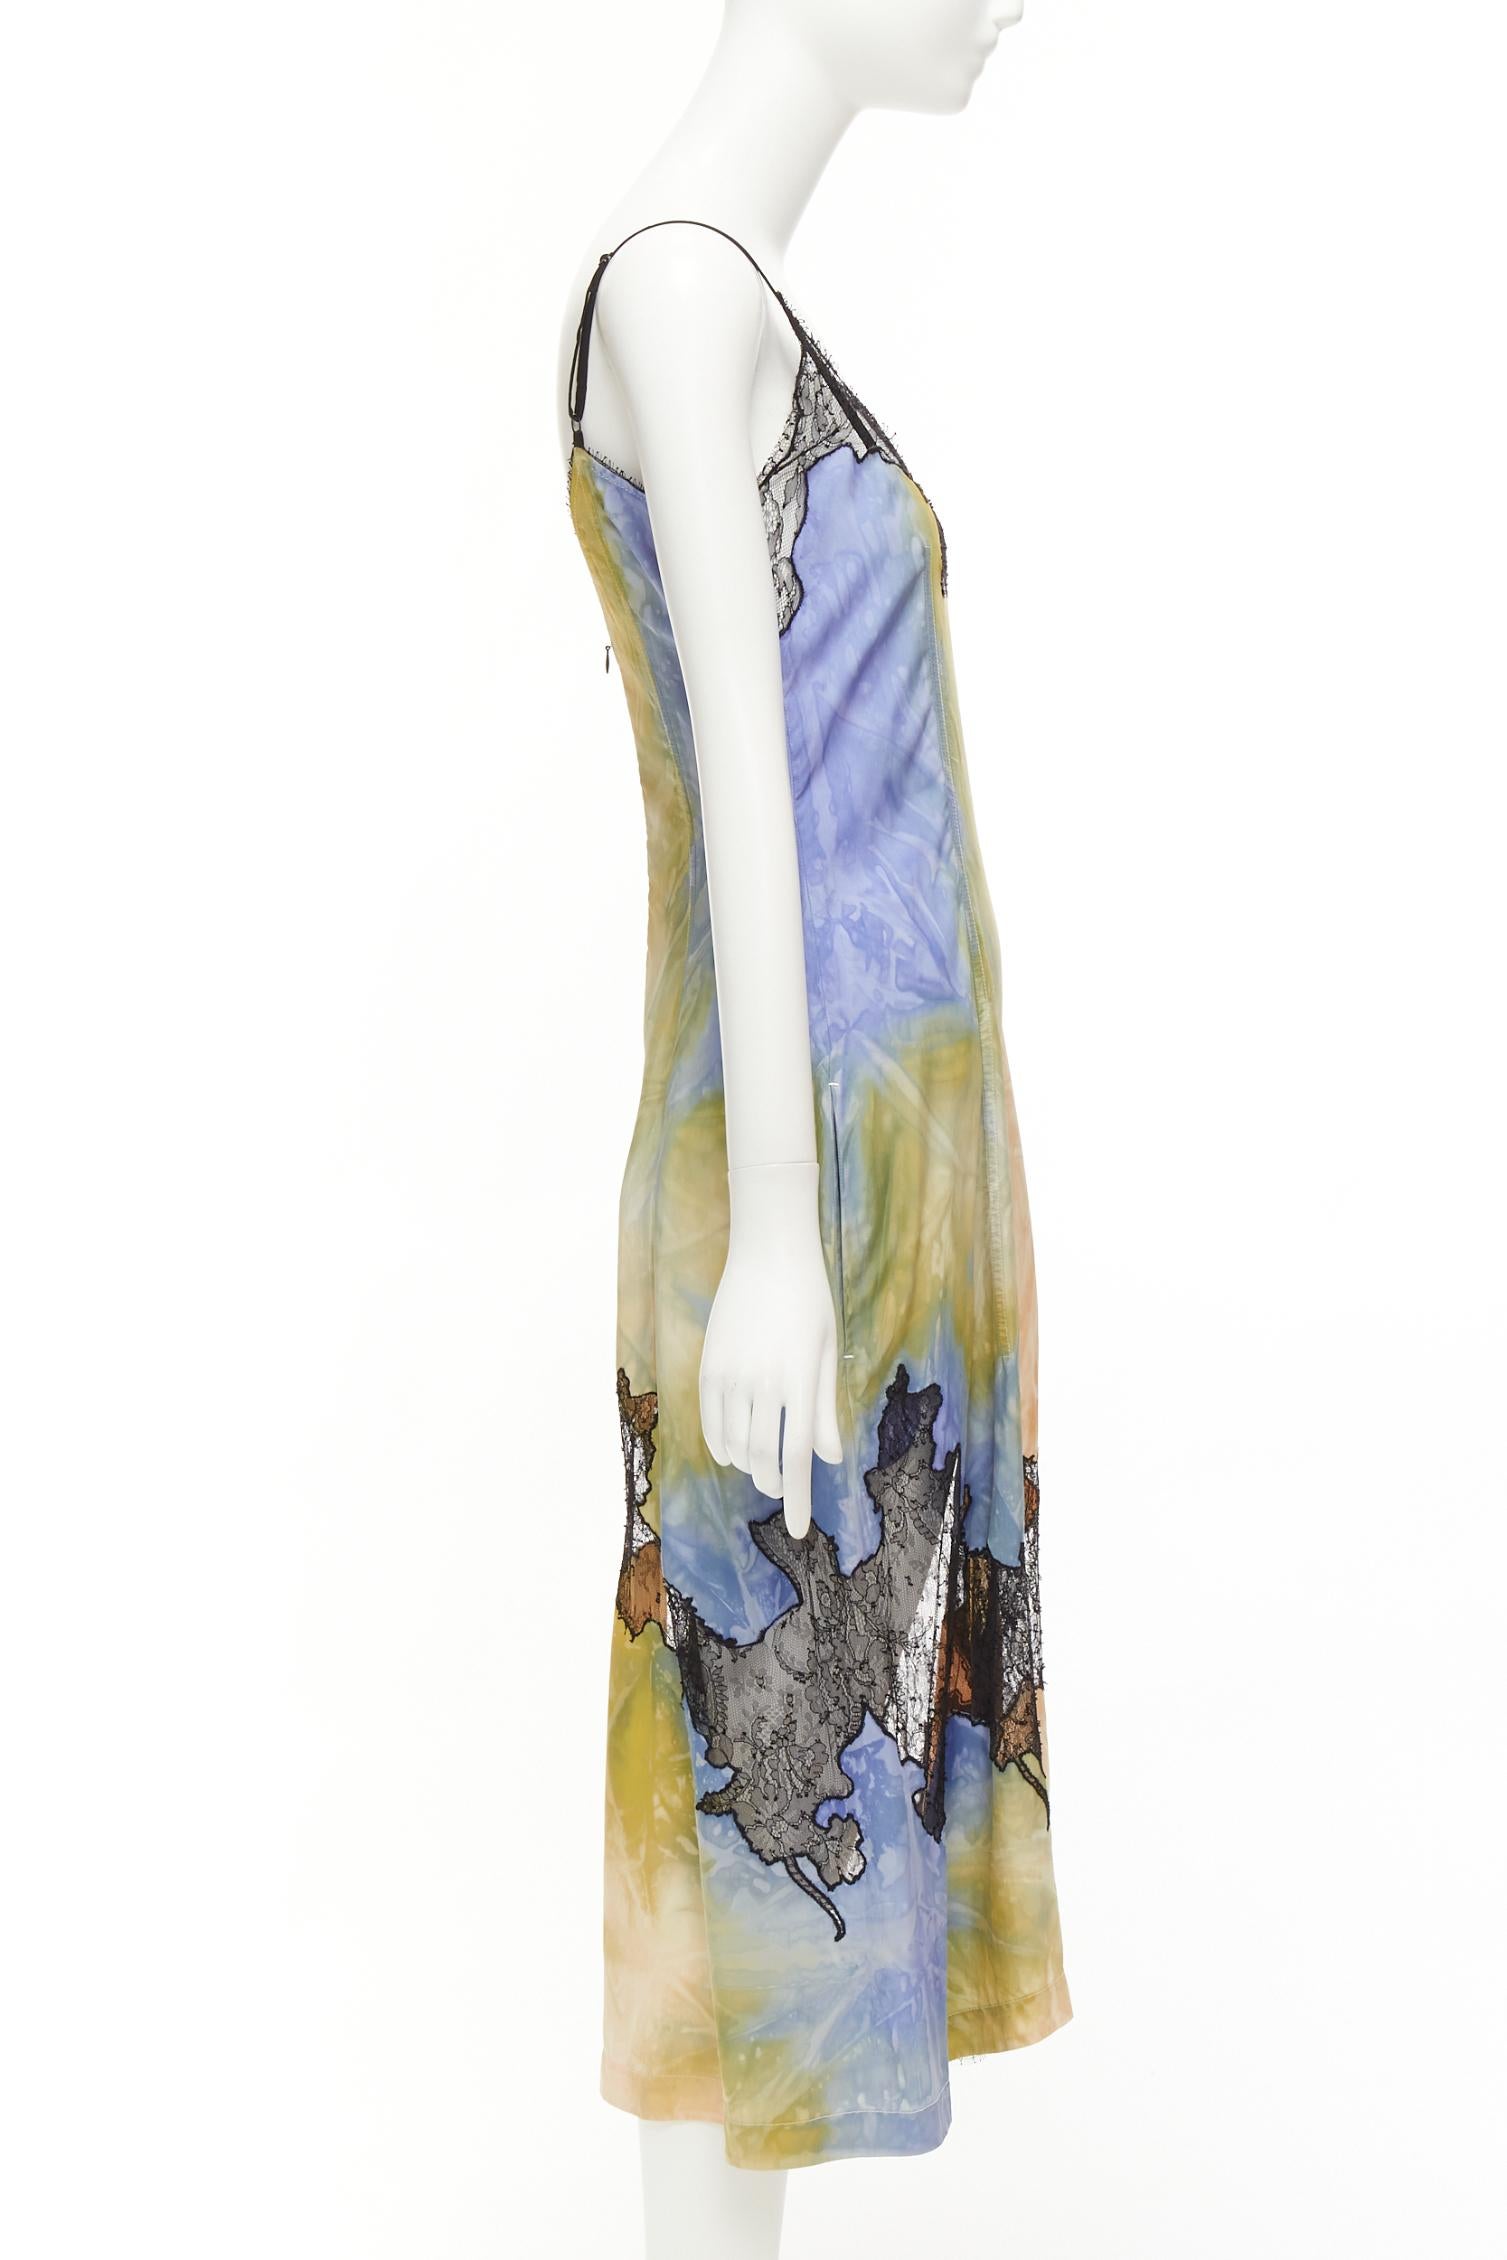 Women's OLD CELINE Phoebe Philo Runway tie dye lace insert burnout slip dress FR36 S